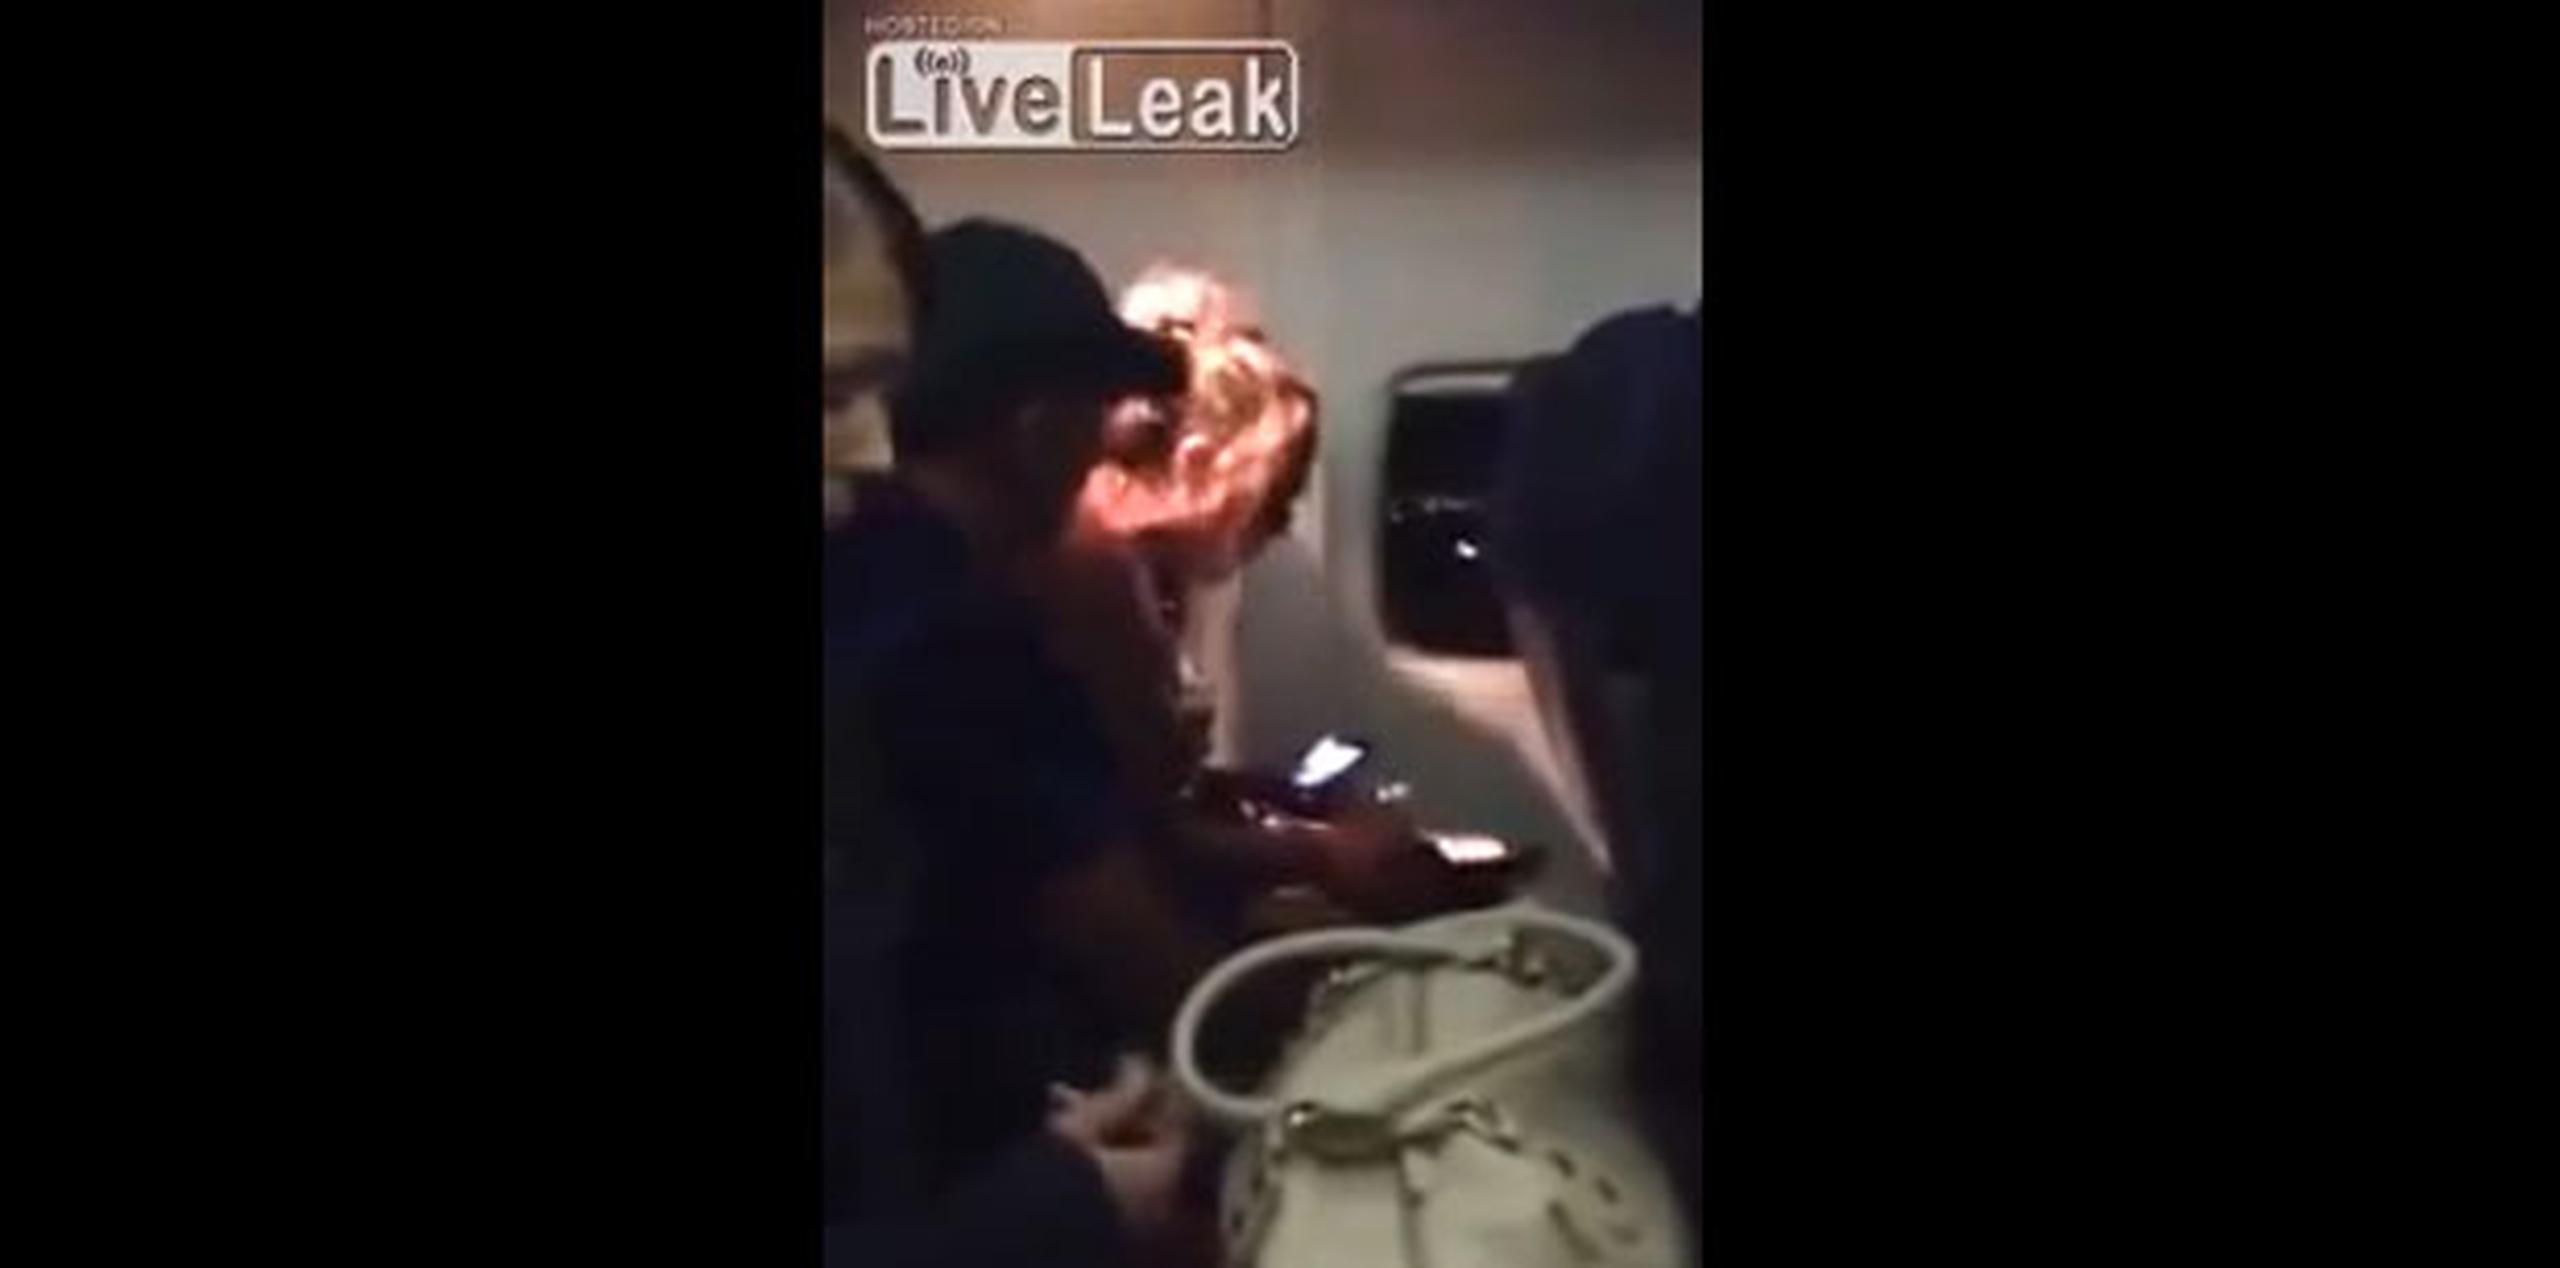 Los demás pasajeros lucían inmutados ante la situación, que según la persona que grabó el vídeo, ya llevaba 20 minutos.